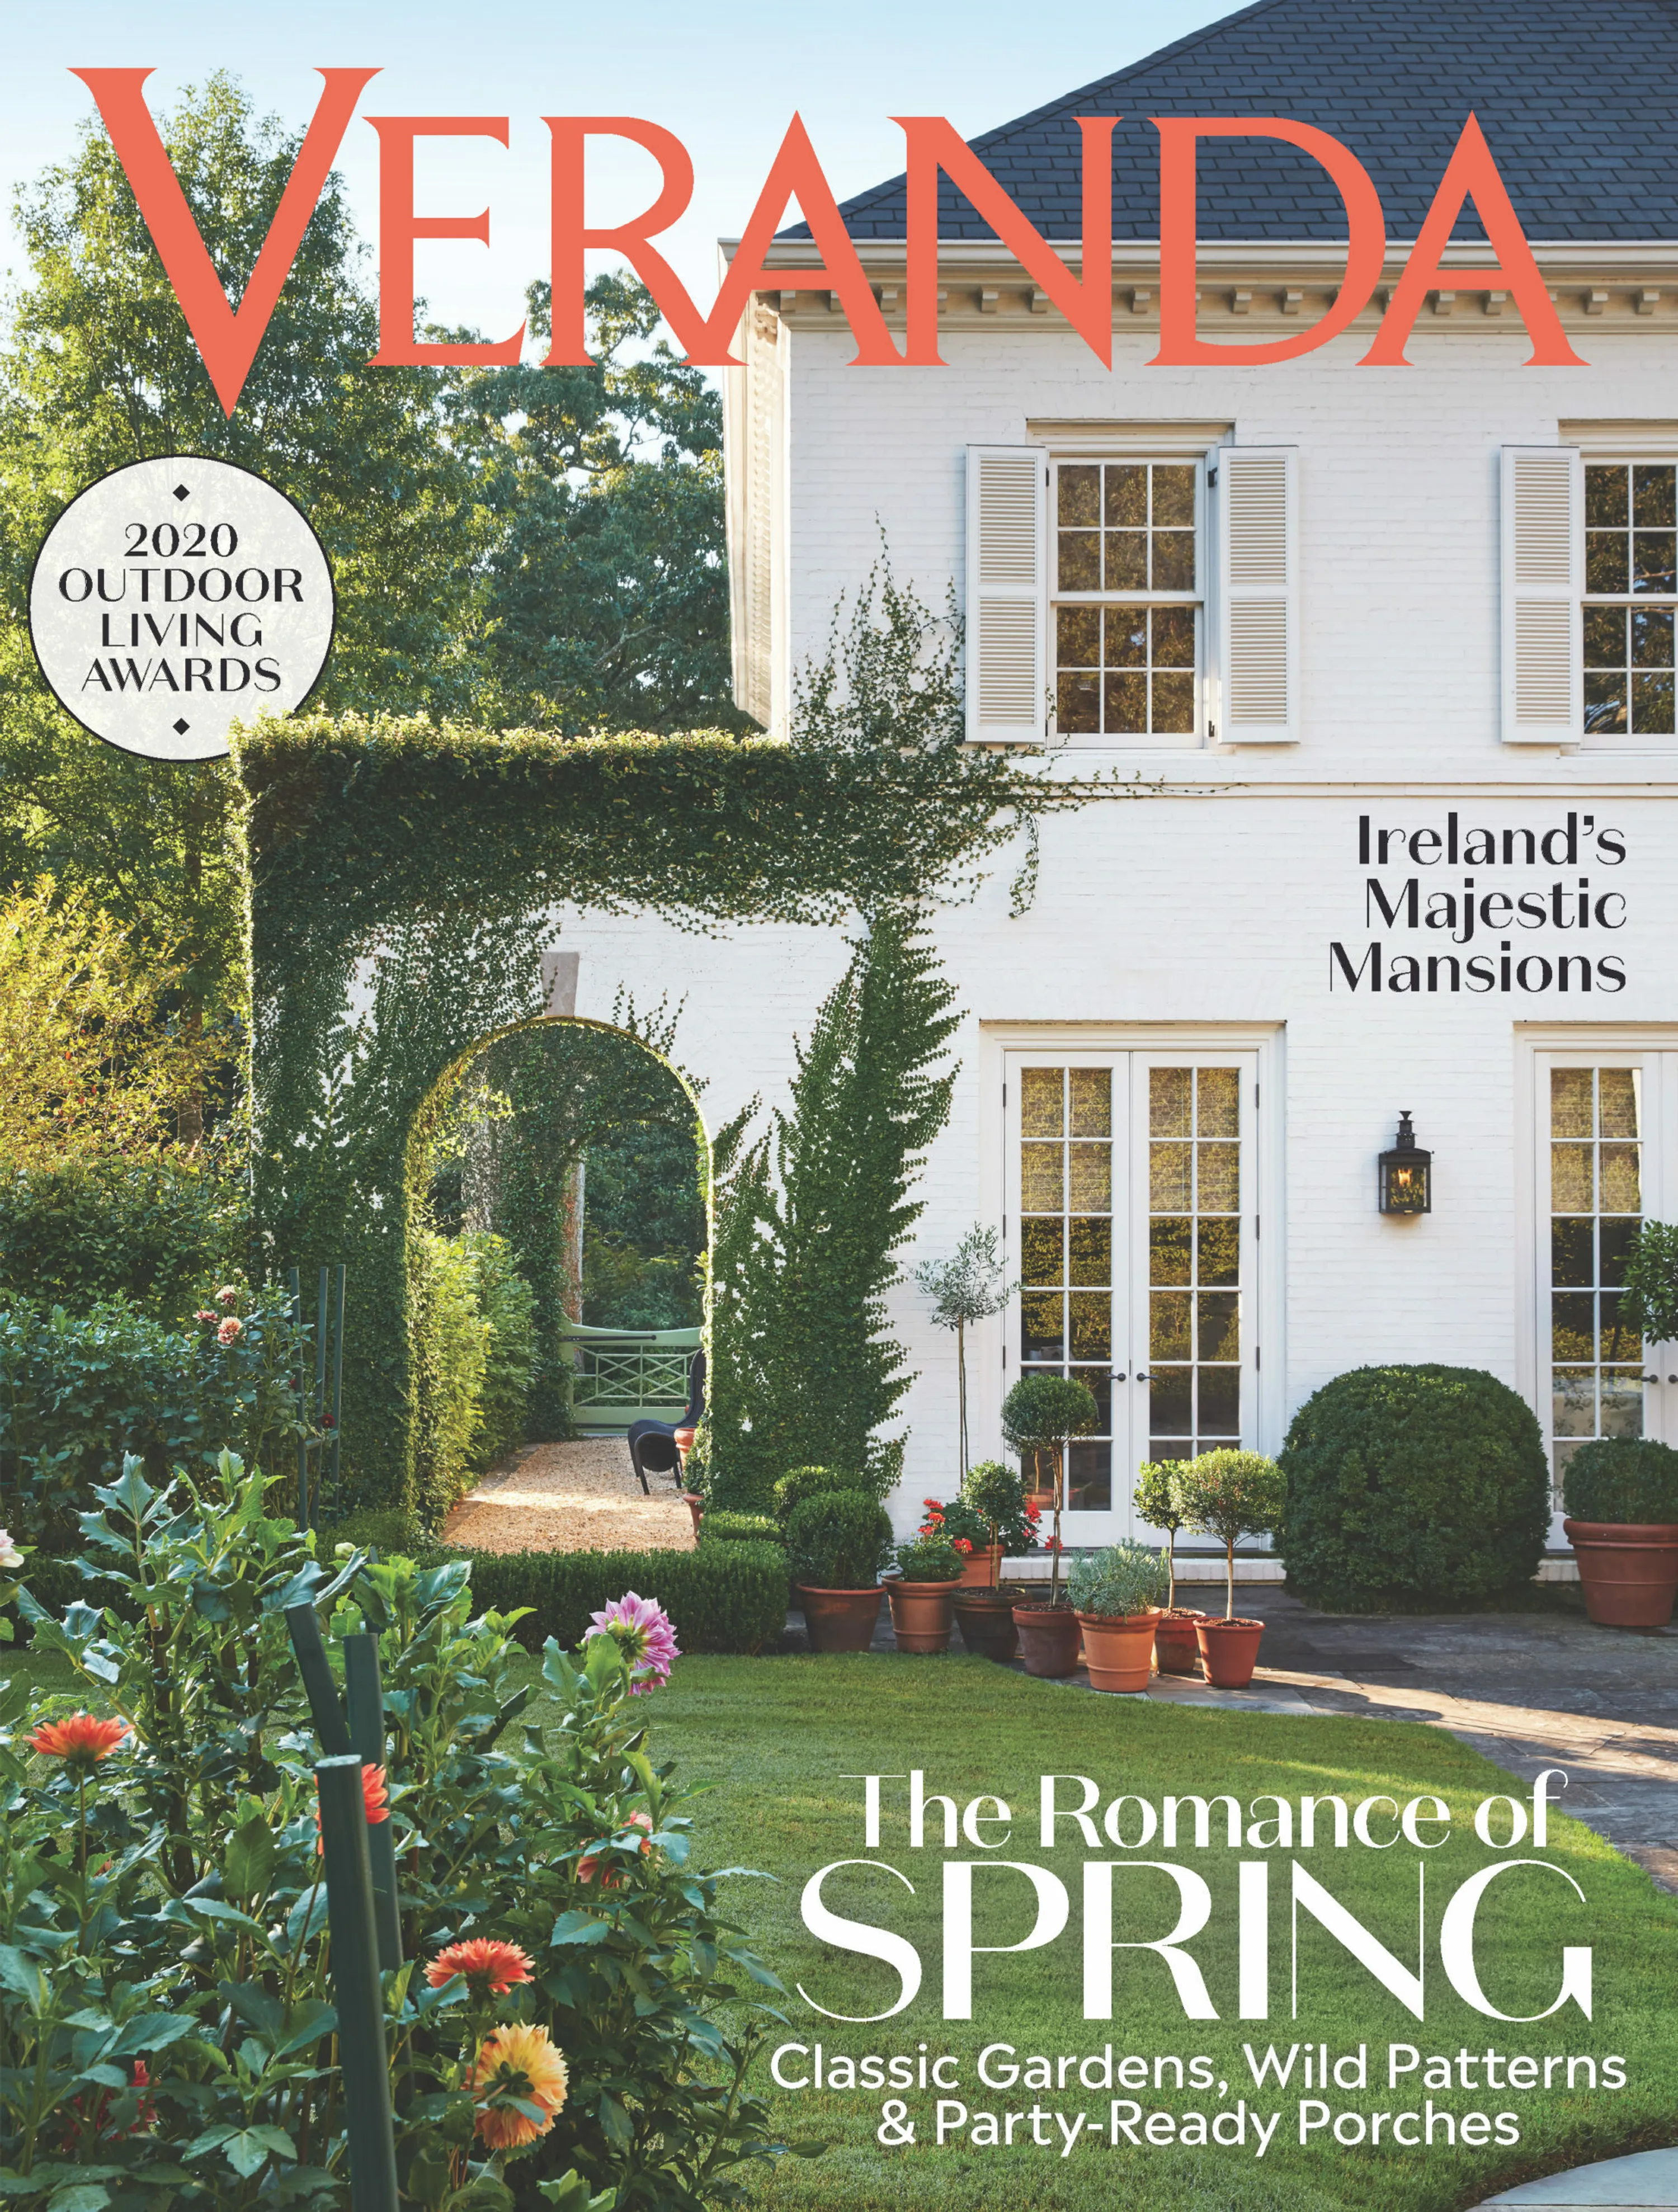 1 veranda magazine cover awarded two veranda magazine outdoor living awards hoerrschaudt News